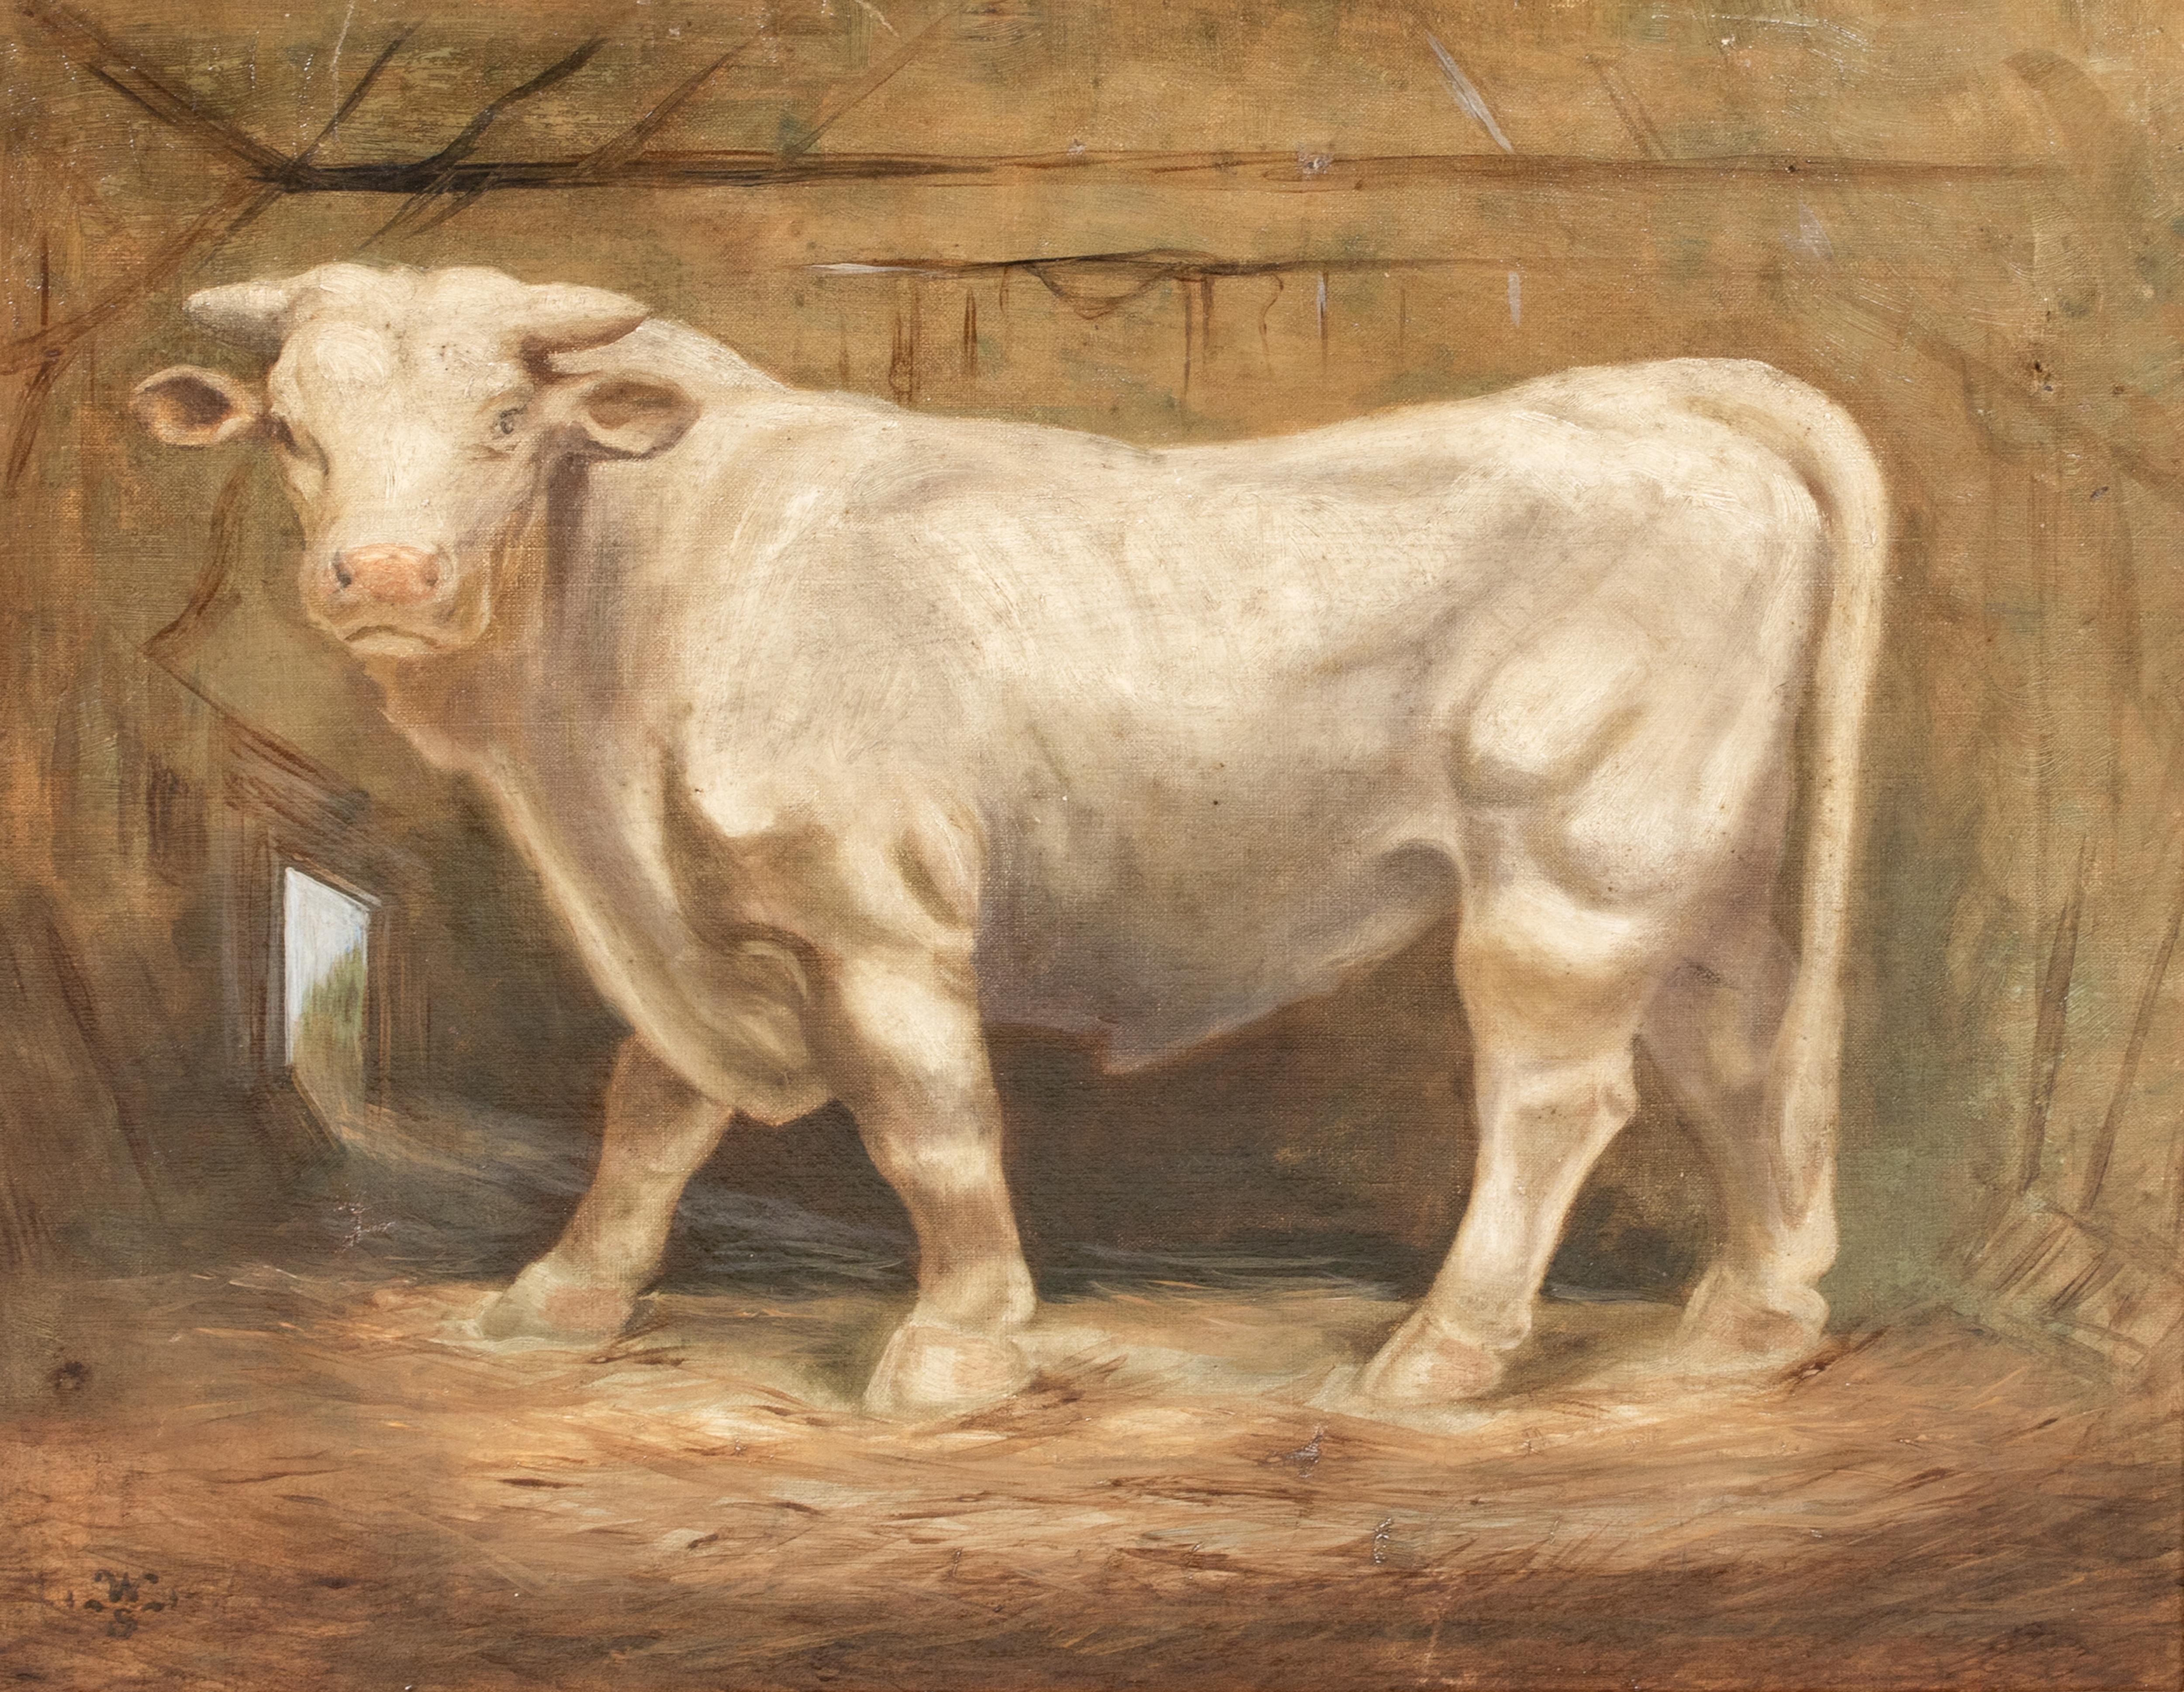 Portrait d'un taureau charolais, 19ème siècle 

monogramme WS

Grand portrait français du XIXe siècle d'un taureau charolais de prix, huile sur toile signée WS. Bonne qualité et bon état, signé et inscrit par l'artiste au verso. Superbe détail et